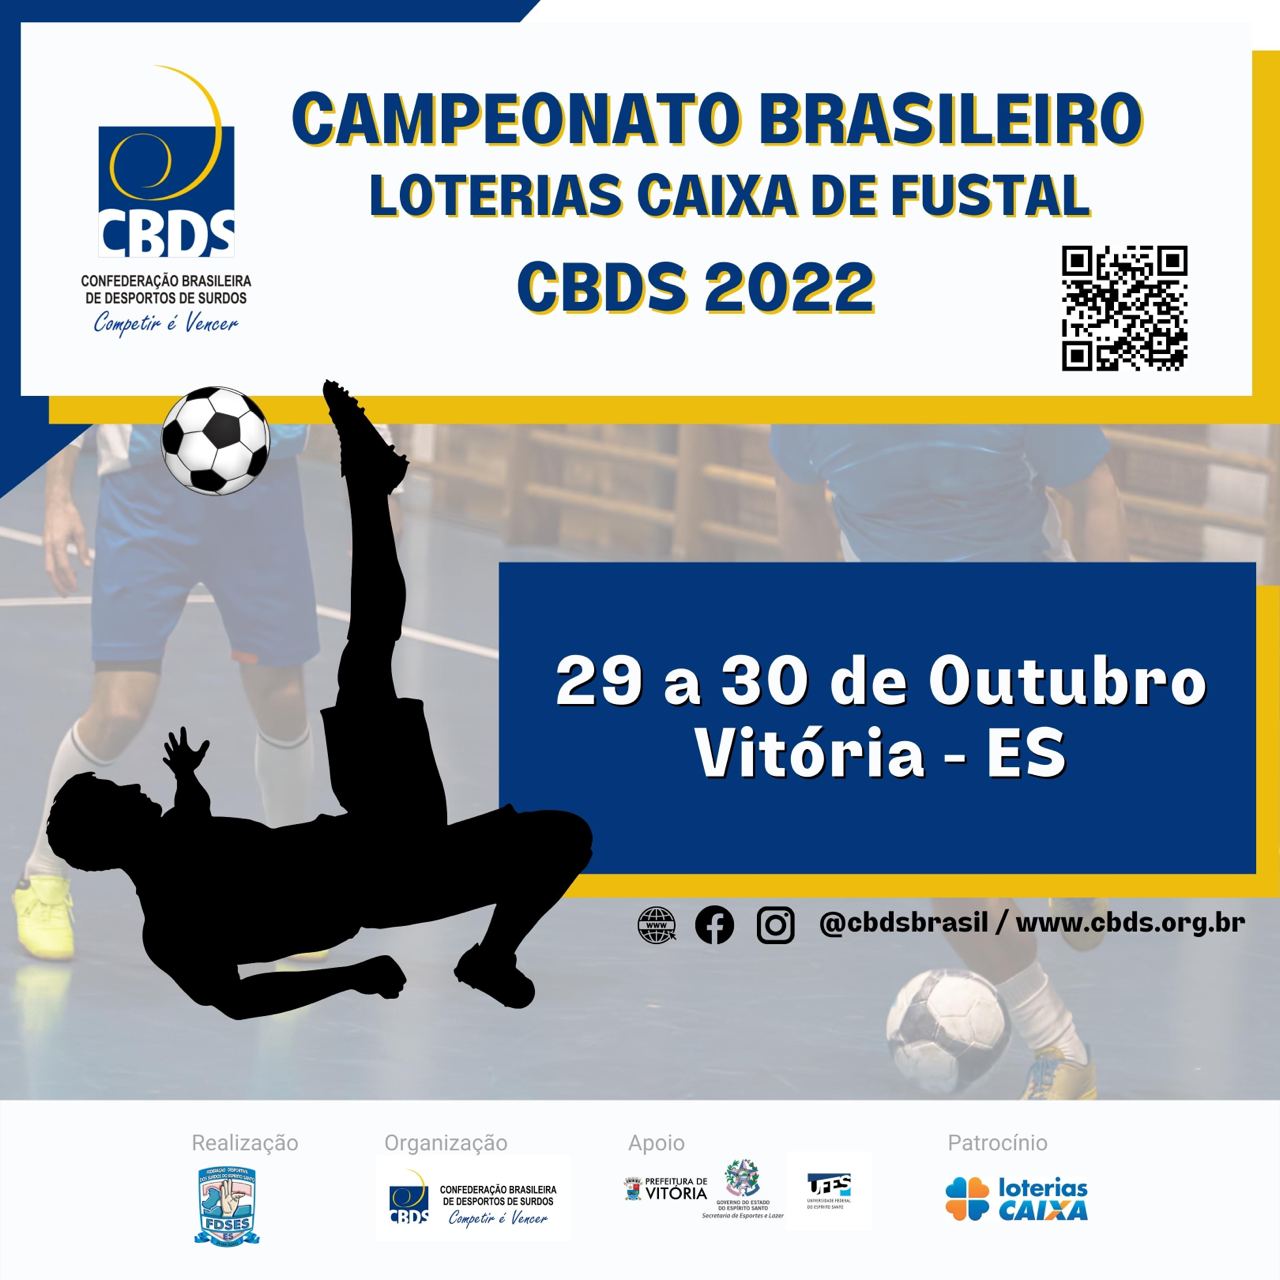 Campeonato Brasileiro Loterias Caixa de Futsal 2022